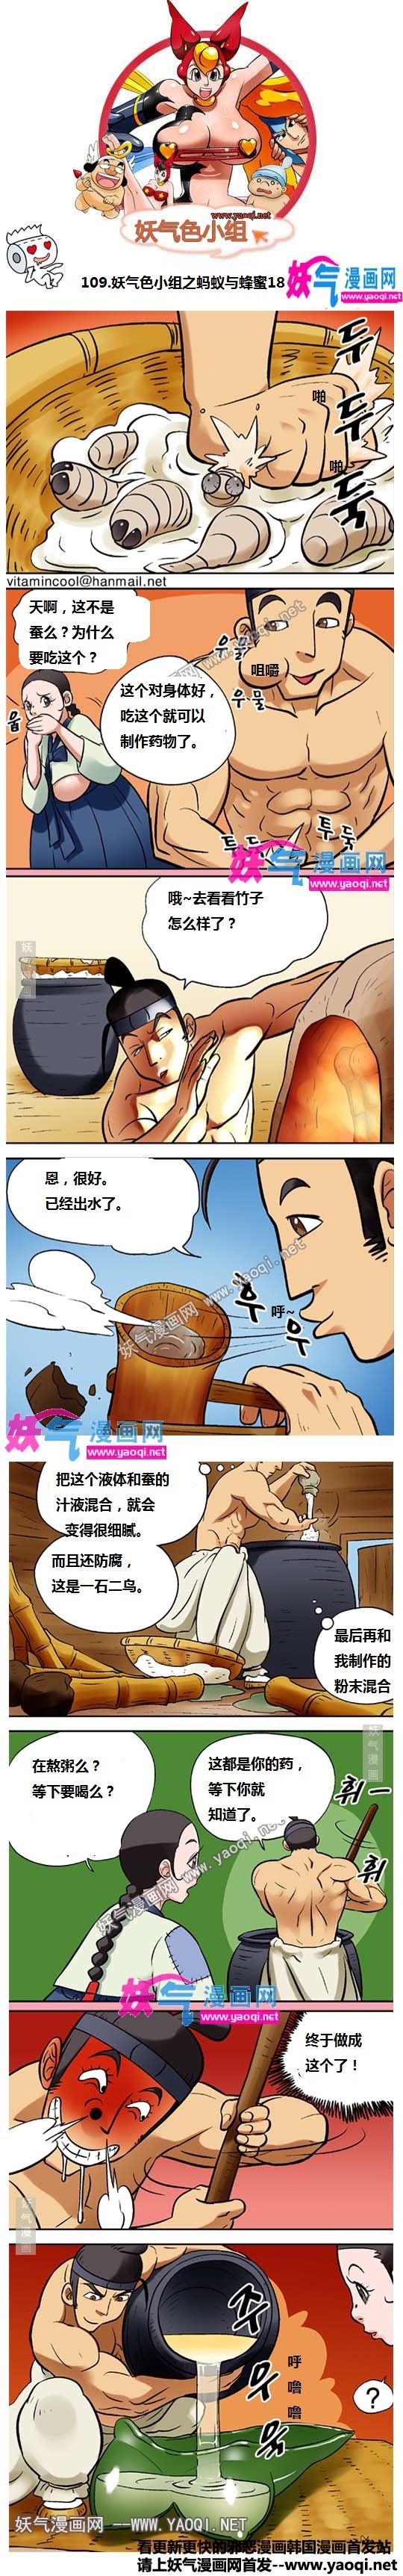 看漫色小组:蚂蚁与蜂蜜18(www.YaoQi.Net)